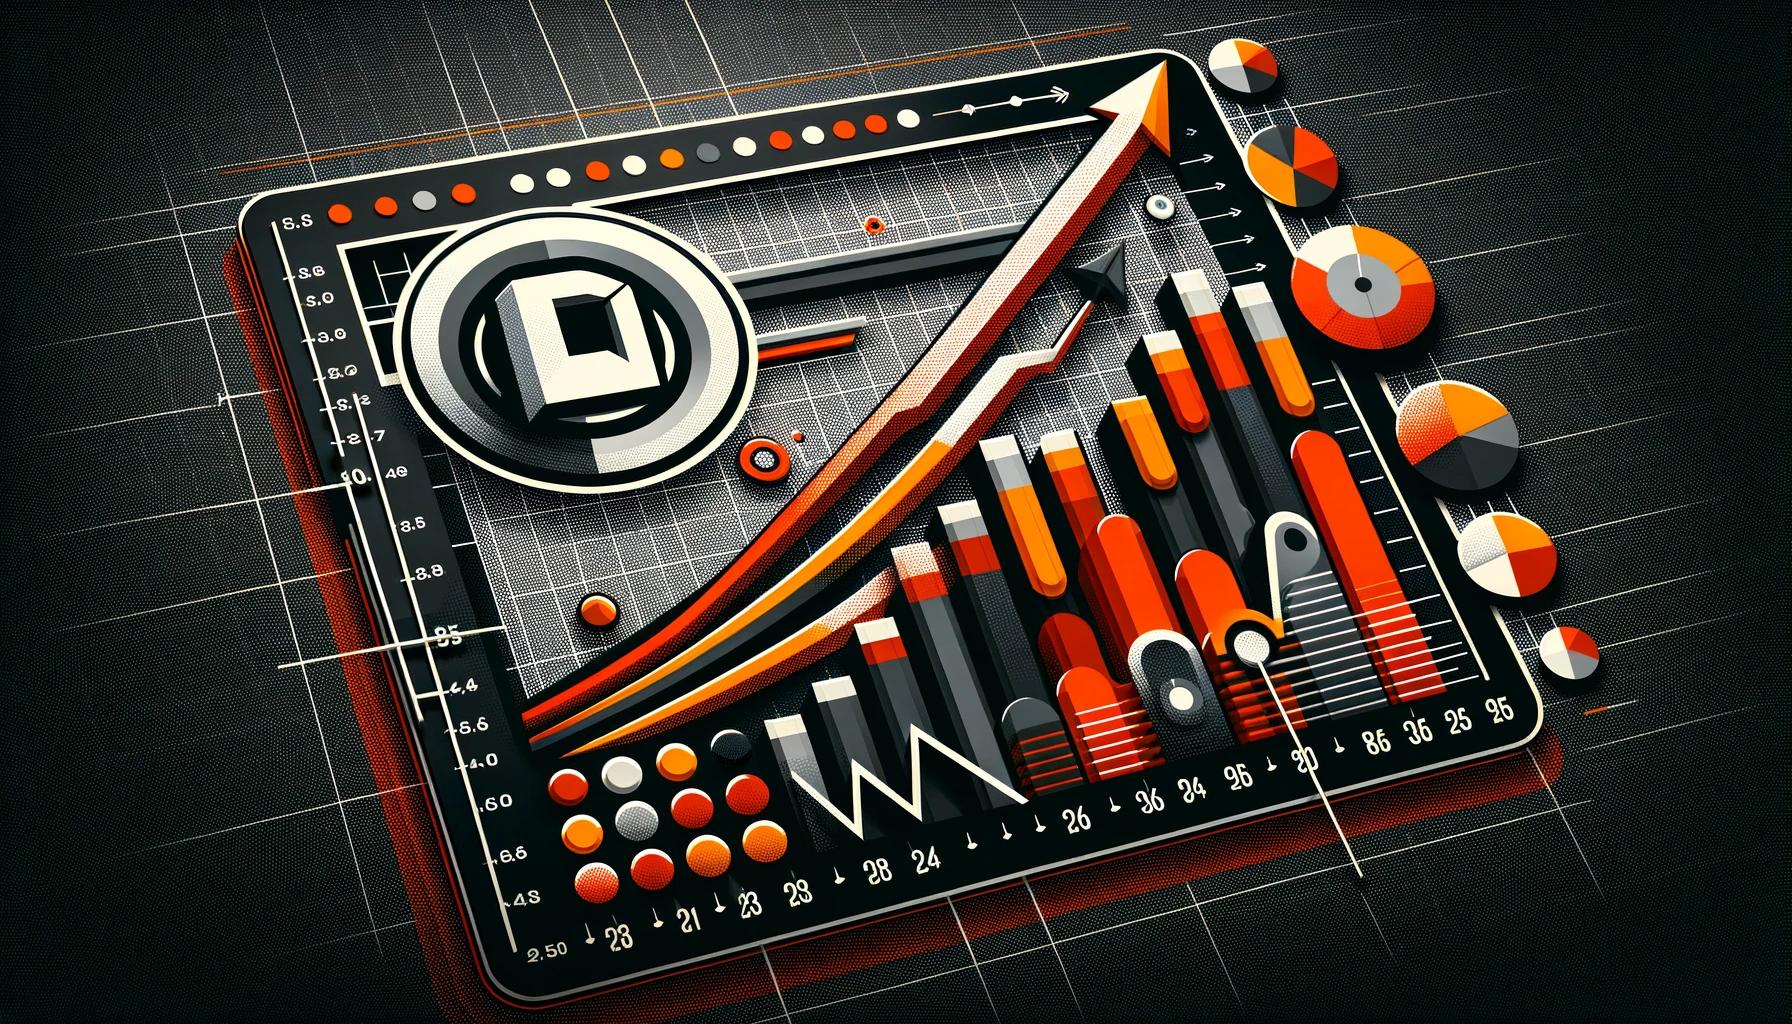 3D-цифровая иллюстрация роста бизнеса с изображением стрелки, финансовых графиков и полос в оранжевом, черном и белом цветах на фоне сетки.